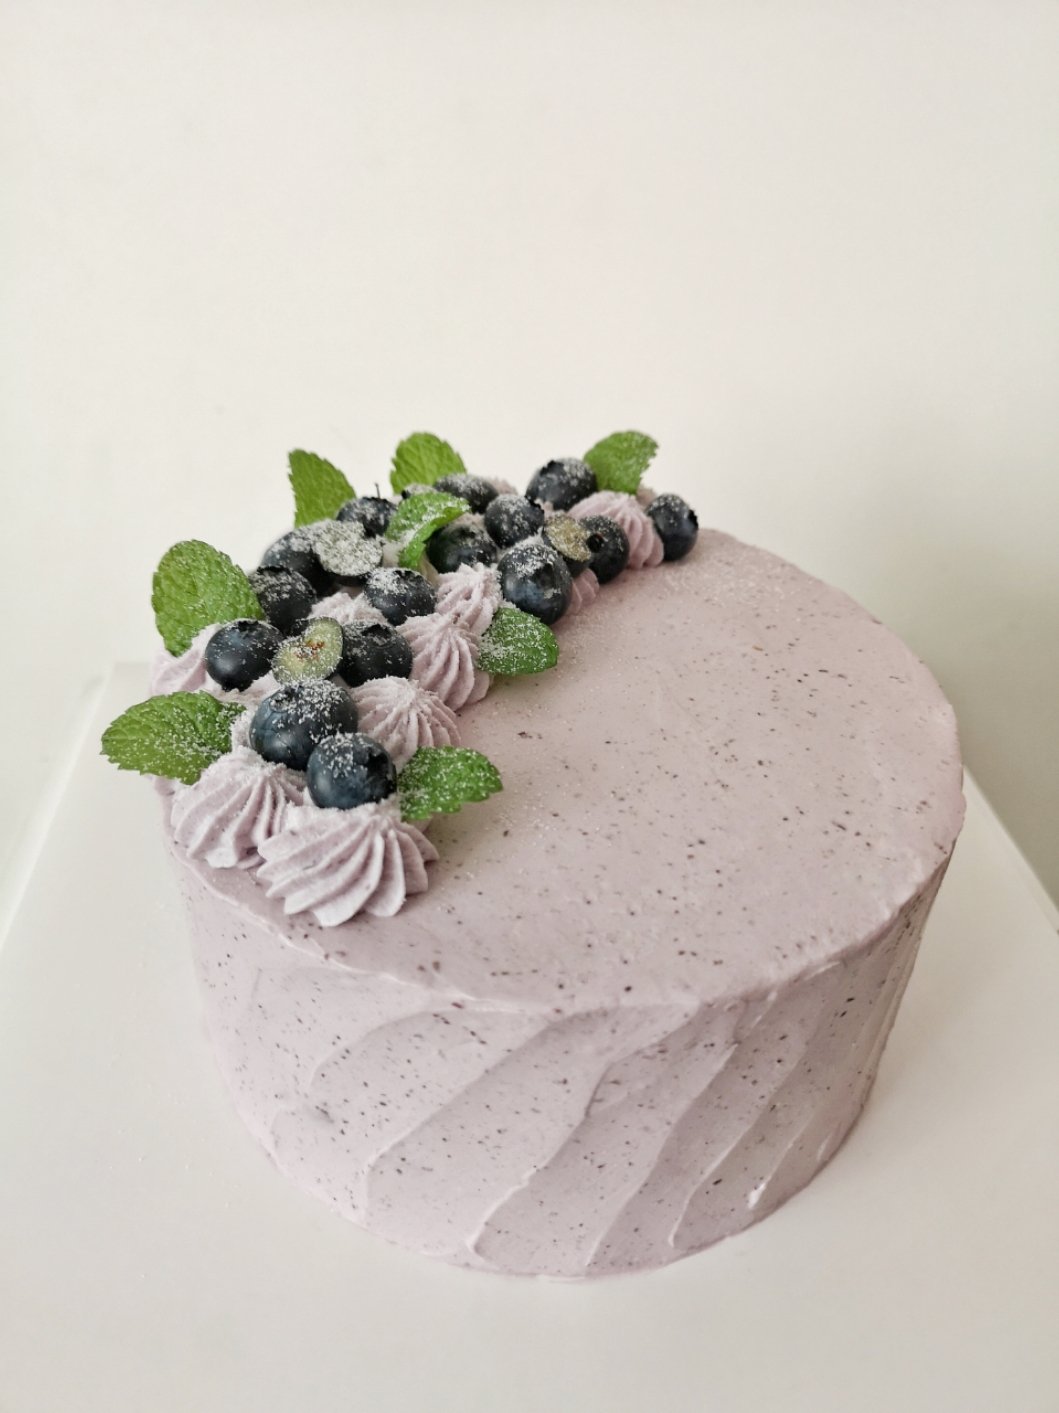 蓝莓奶油蛋糕